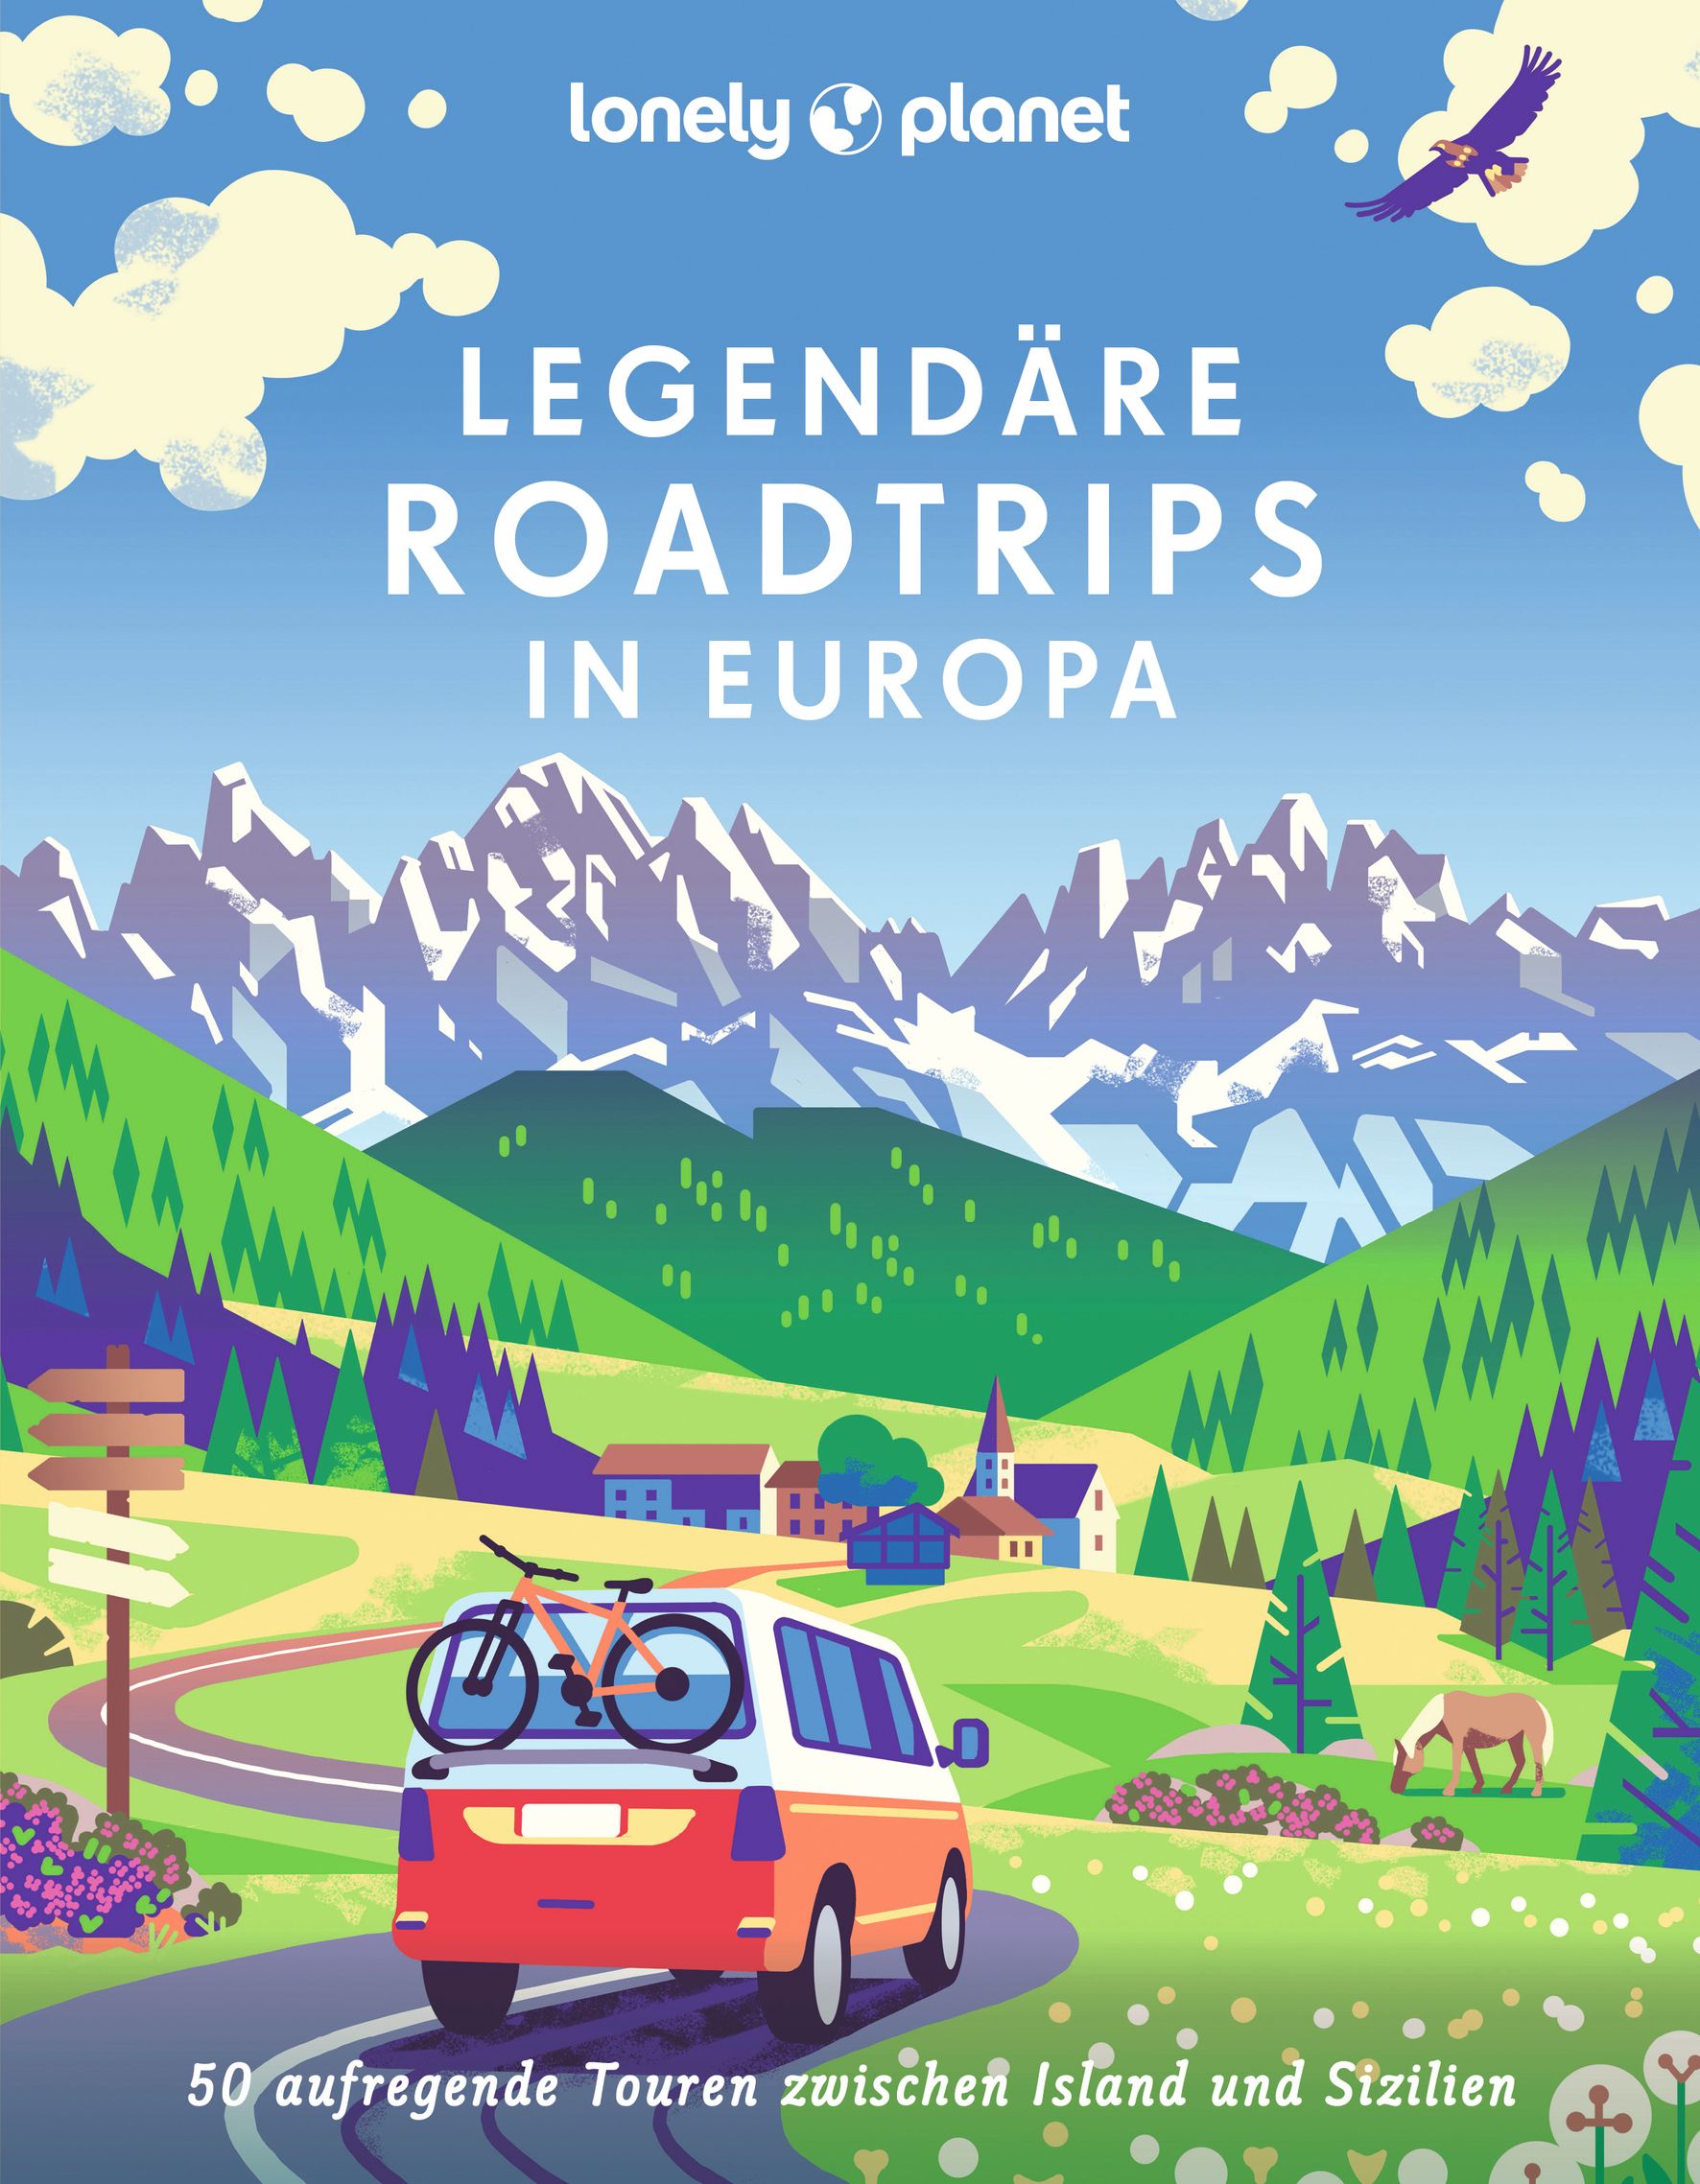 Lonely Planet Legendäre Roadtrips in Europa